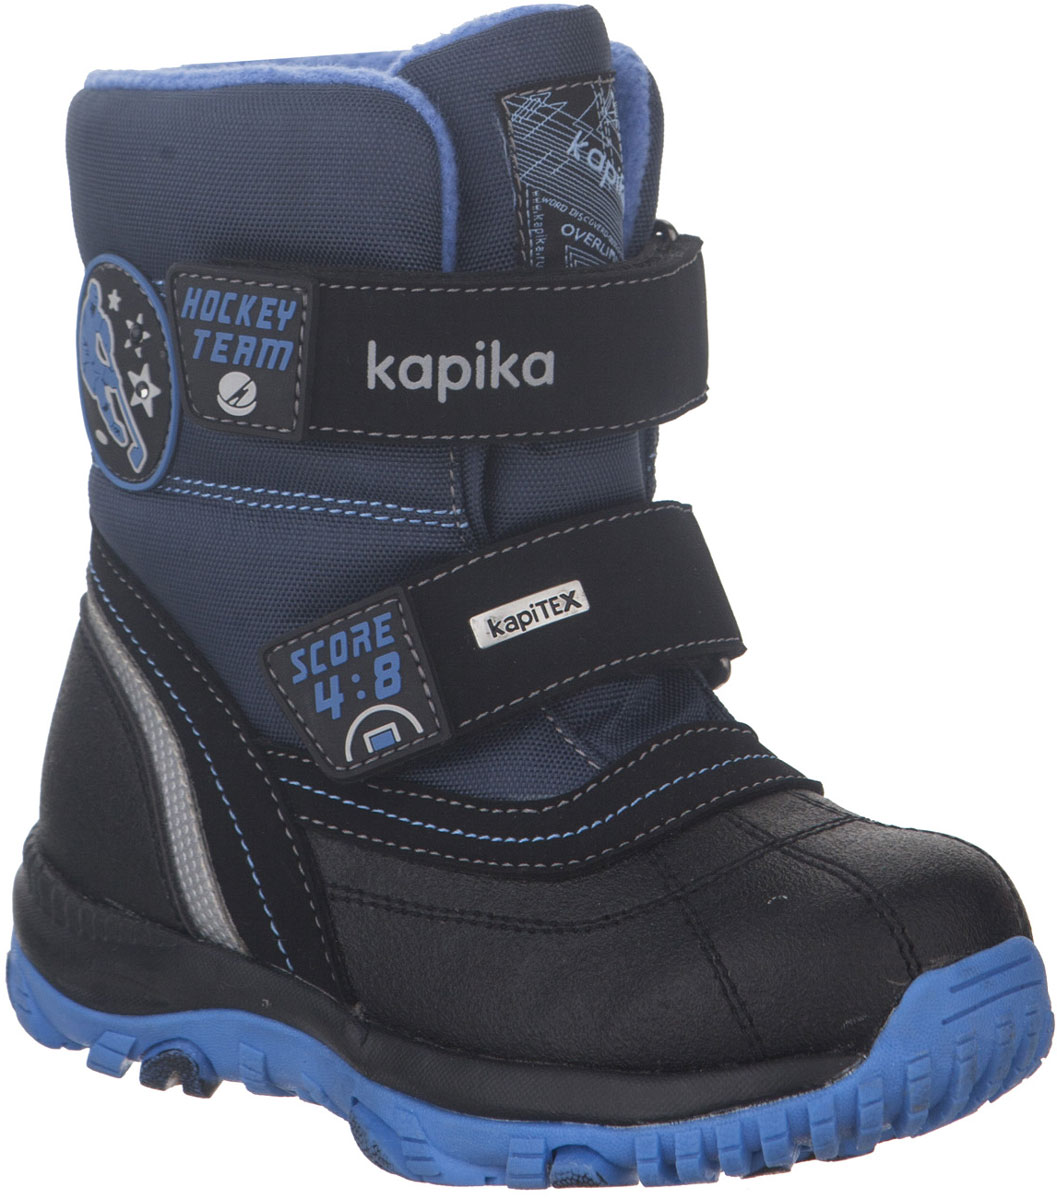 Ботинки для мальчика Kapika, цвет: черный, синий. 42217-1. Размер 32